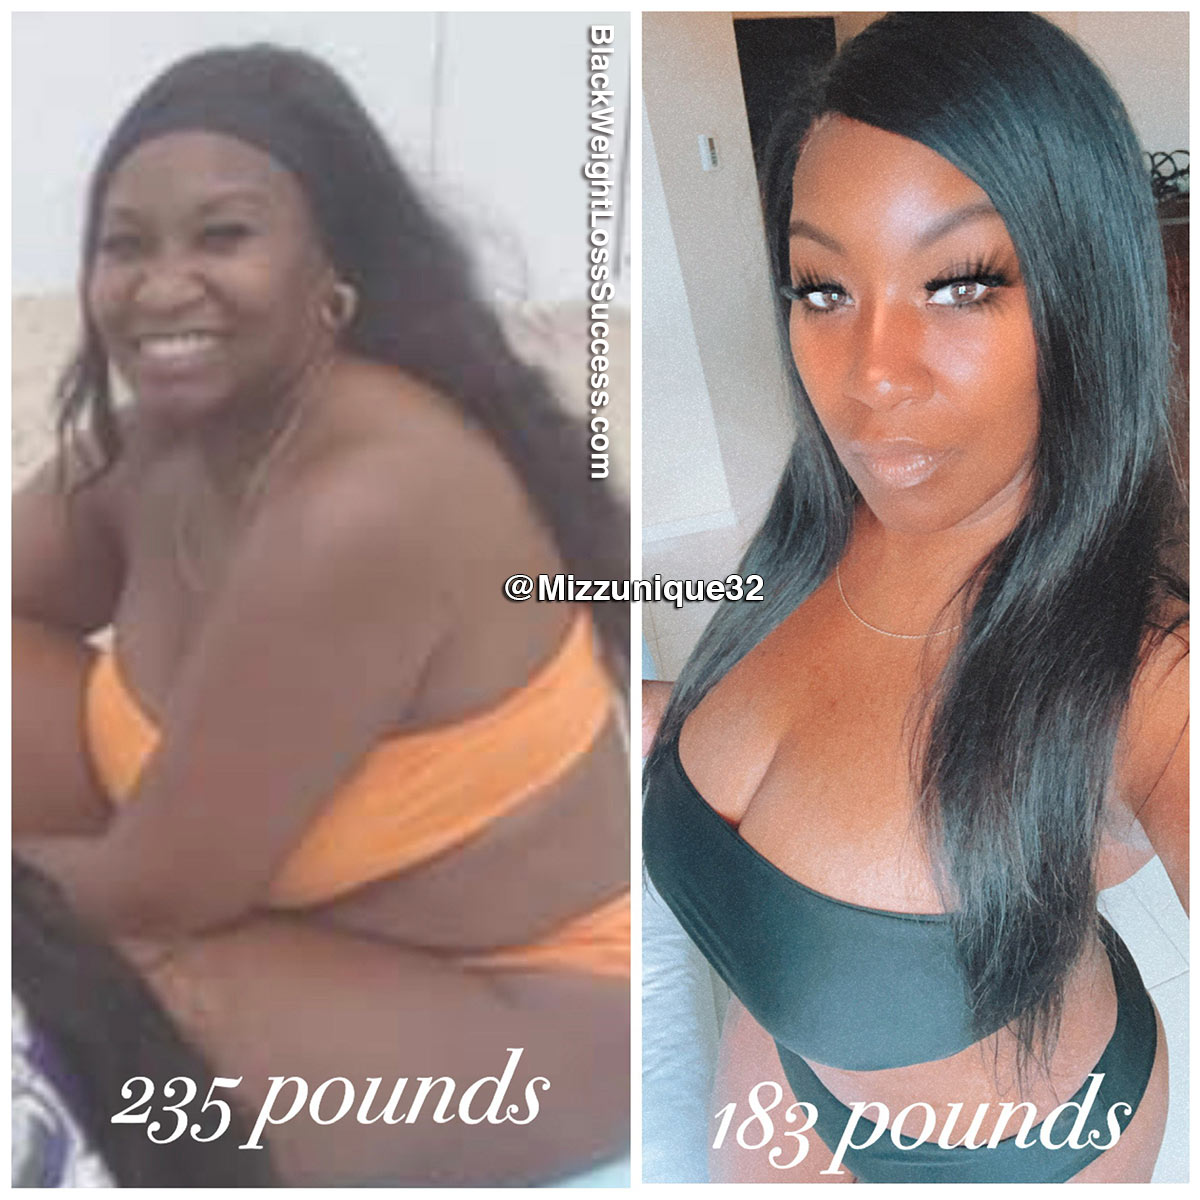 Monique lost 62 pounds